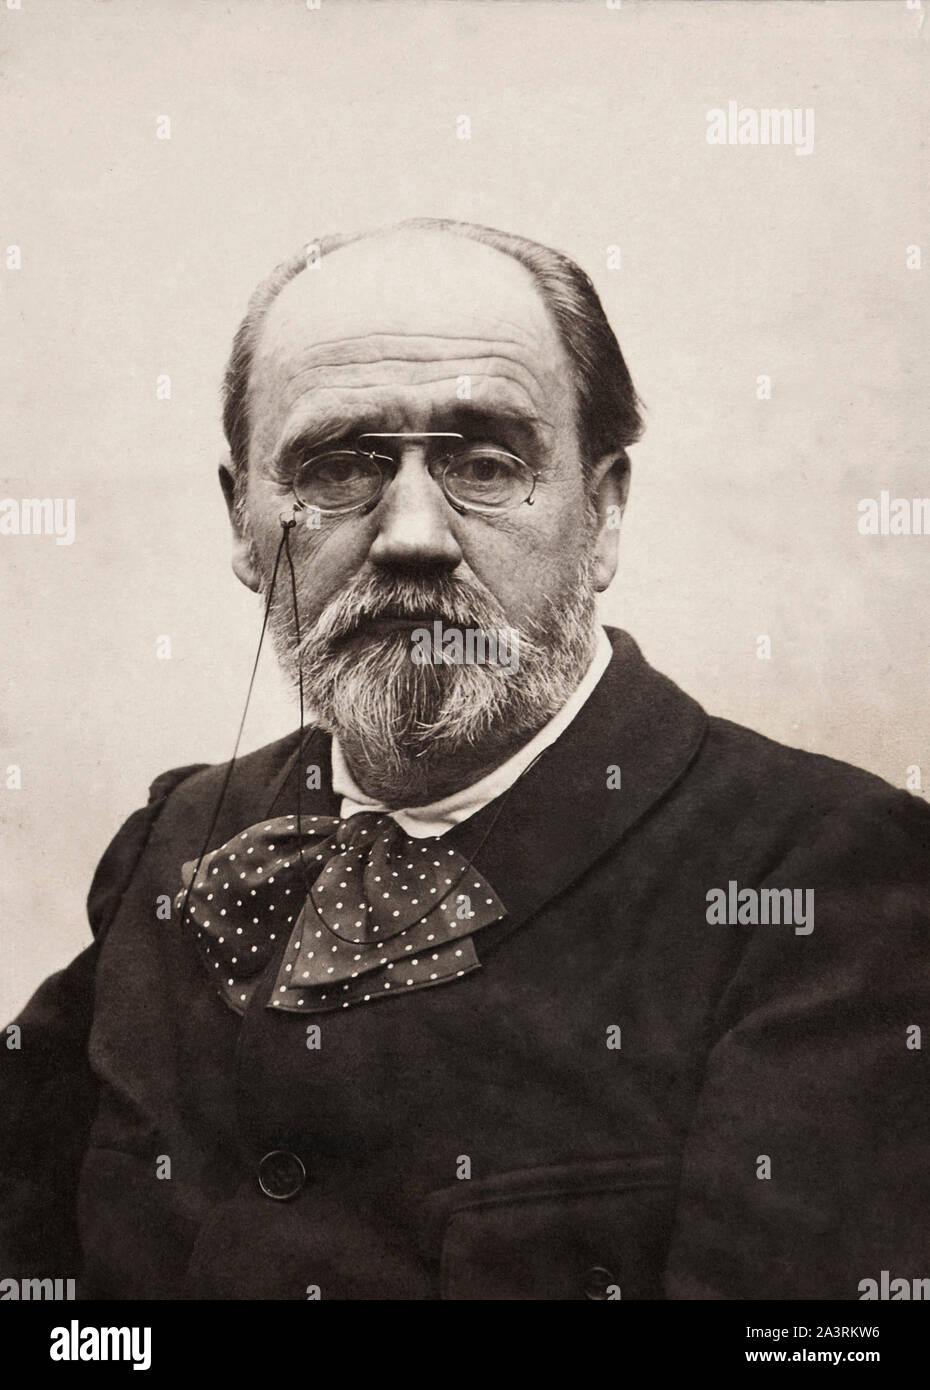 Antoine Charles Edouard Emile Zola (1840 - 1902) fue un escritor francés, publicista y político. Uno de los representantes más significativos del realismo Foto de stock